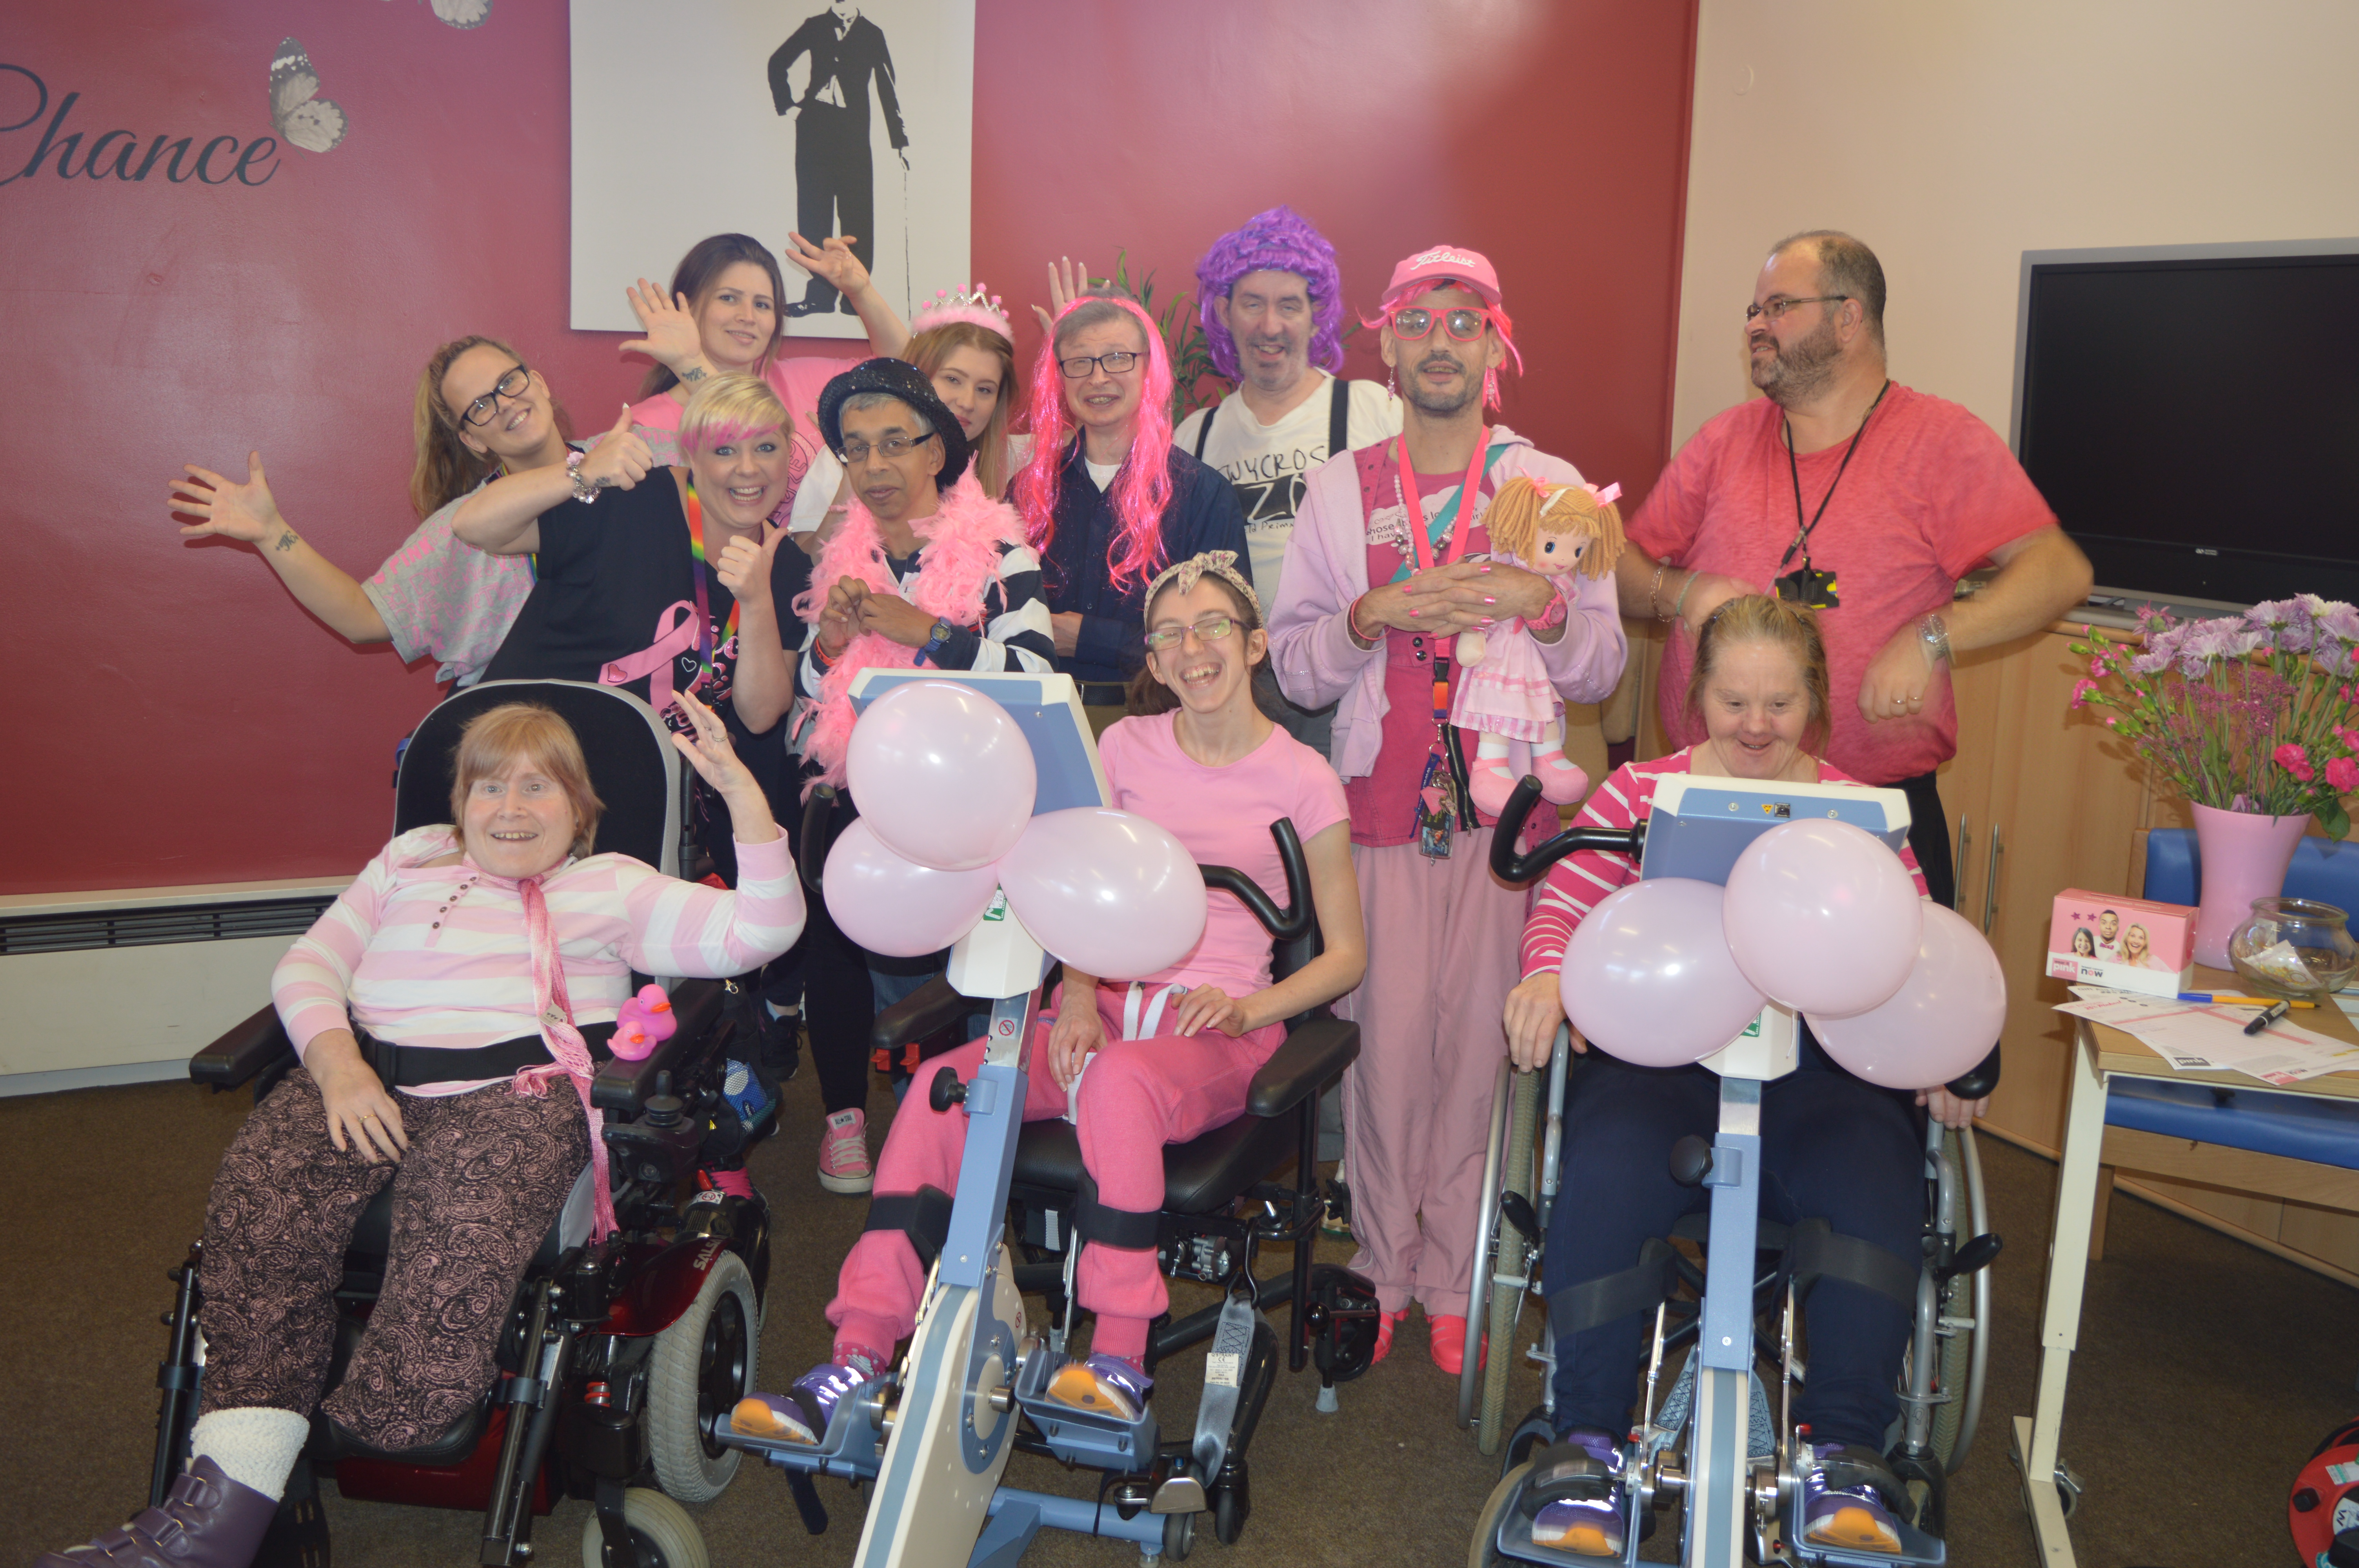 Wear It Pink Charity Fundraiser team